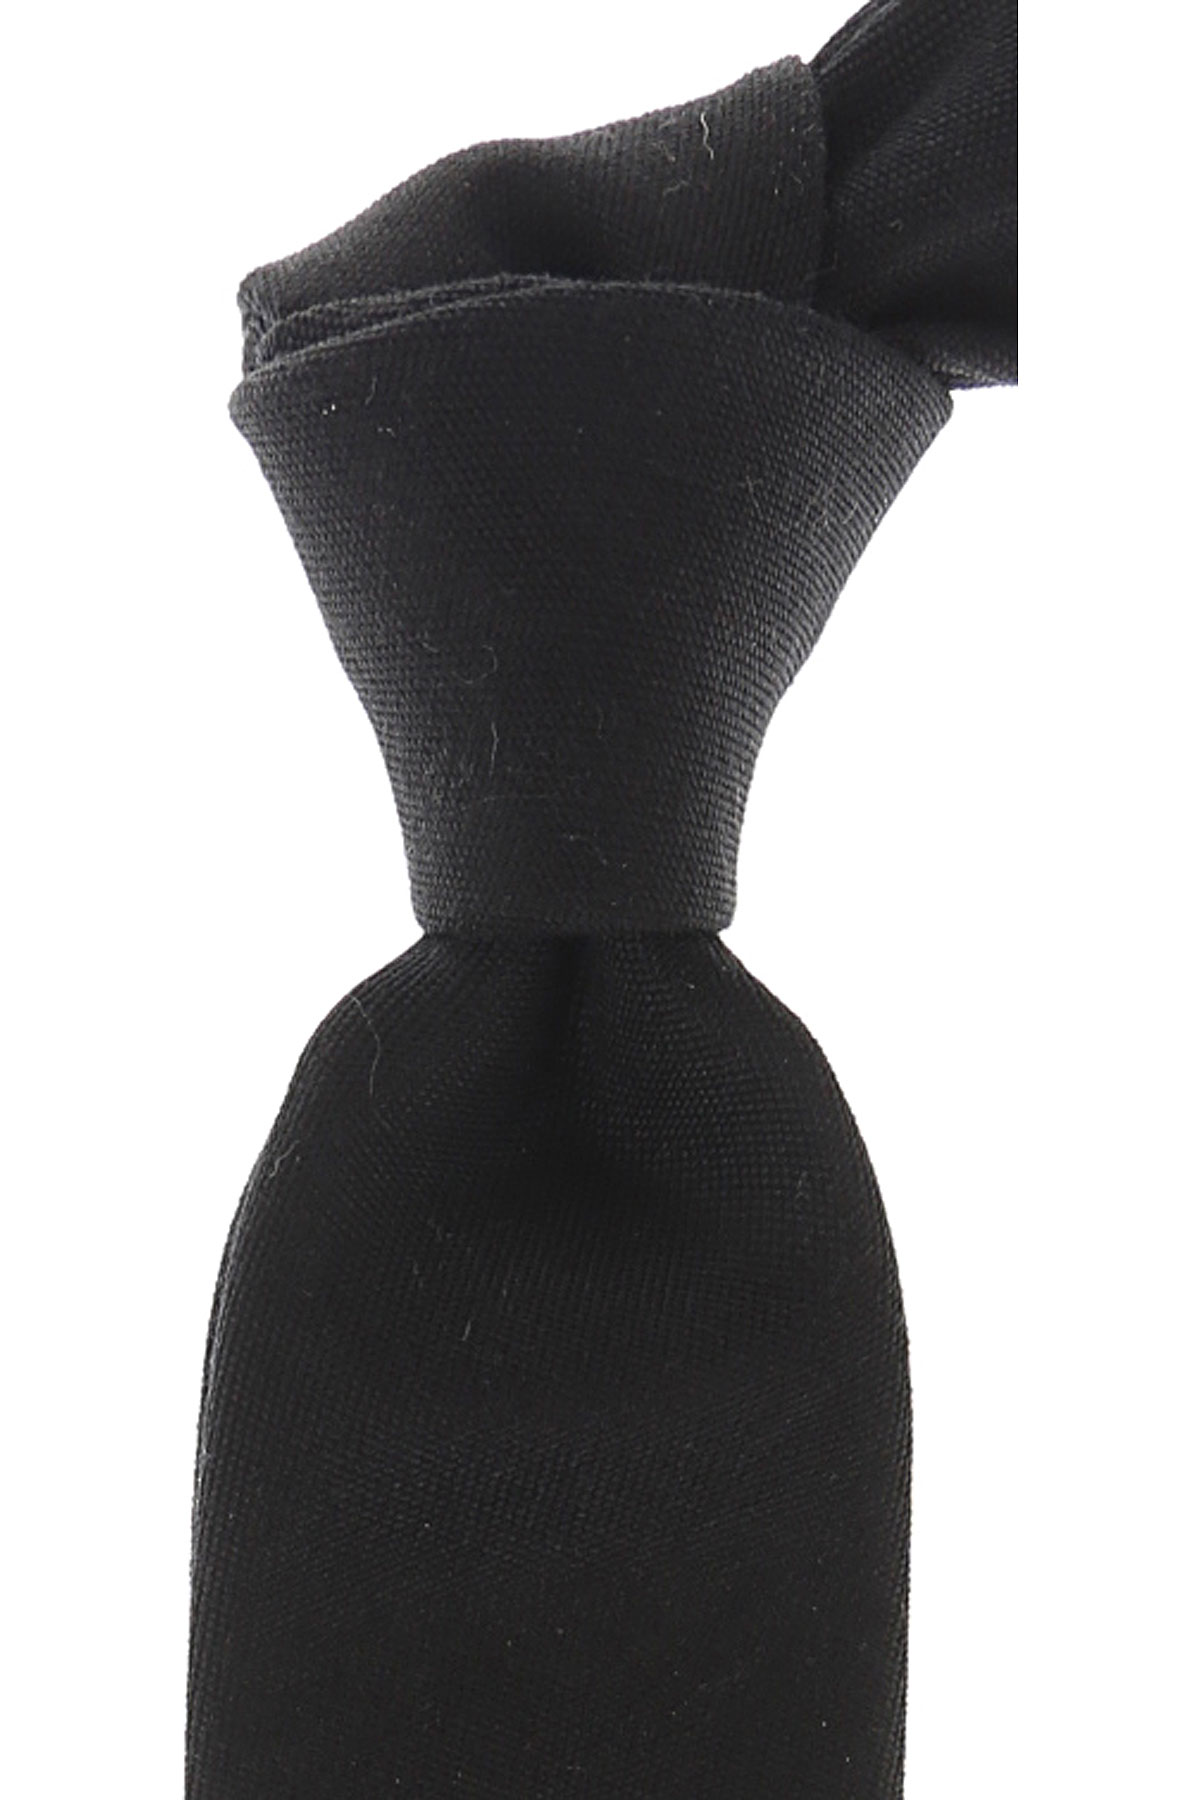 Cravates Givenchy , Noir, Laine, 2017